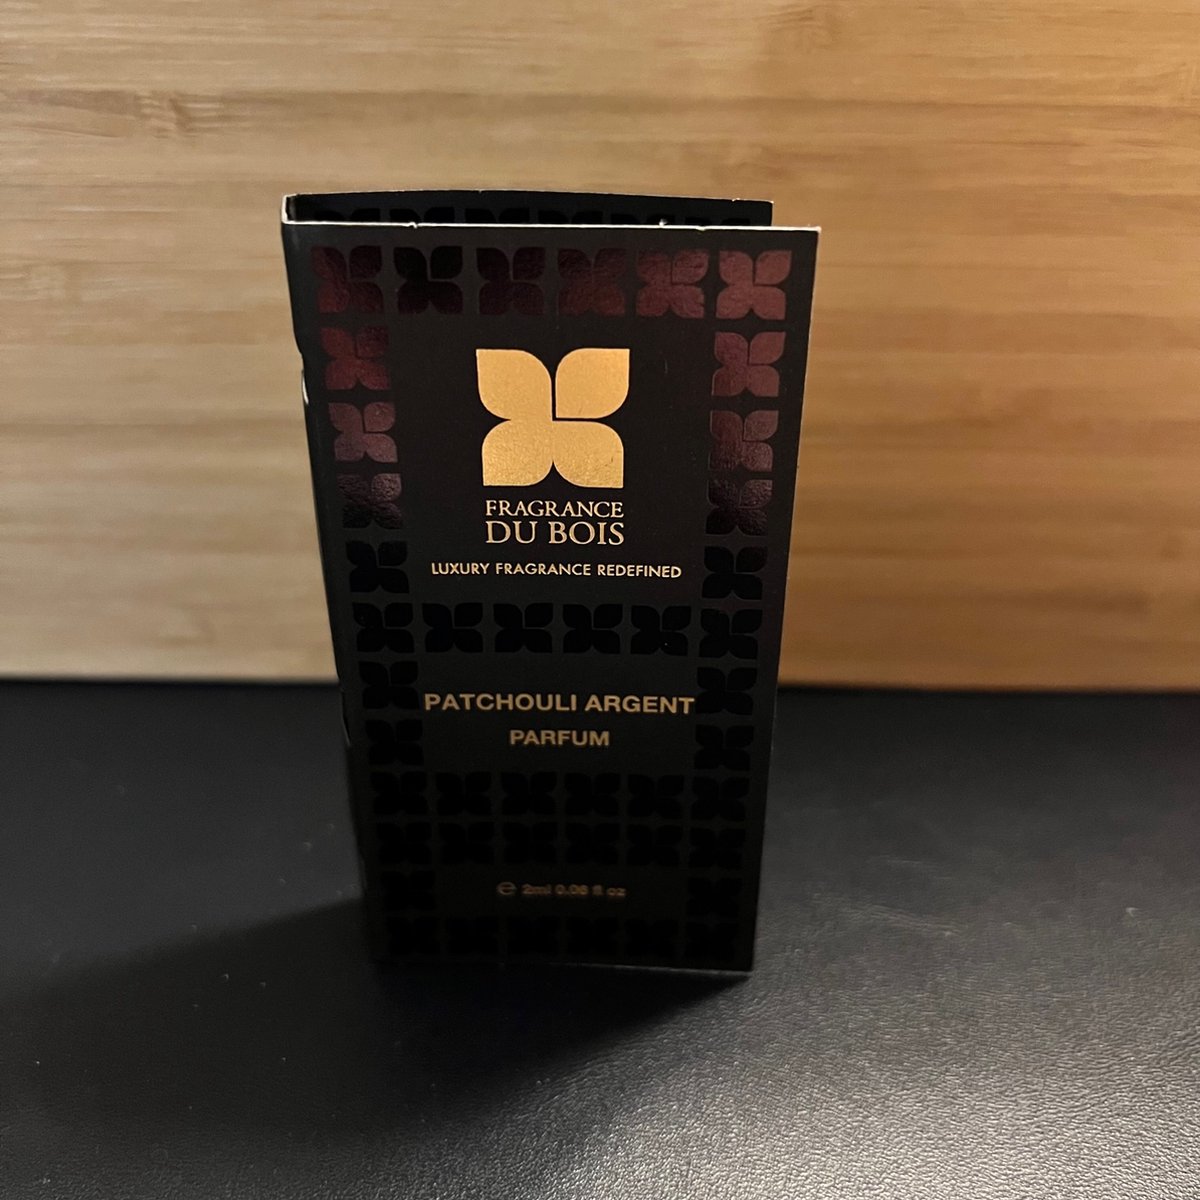 Fragrance Du Bois - PATCHOULI ARGENT - 2ml Parfum Original Sample